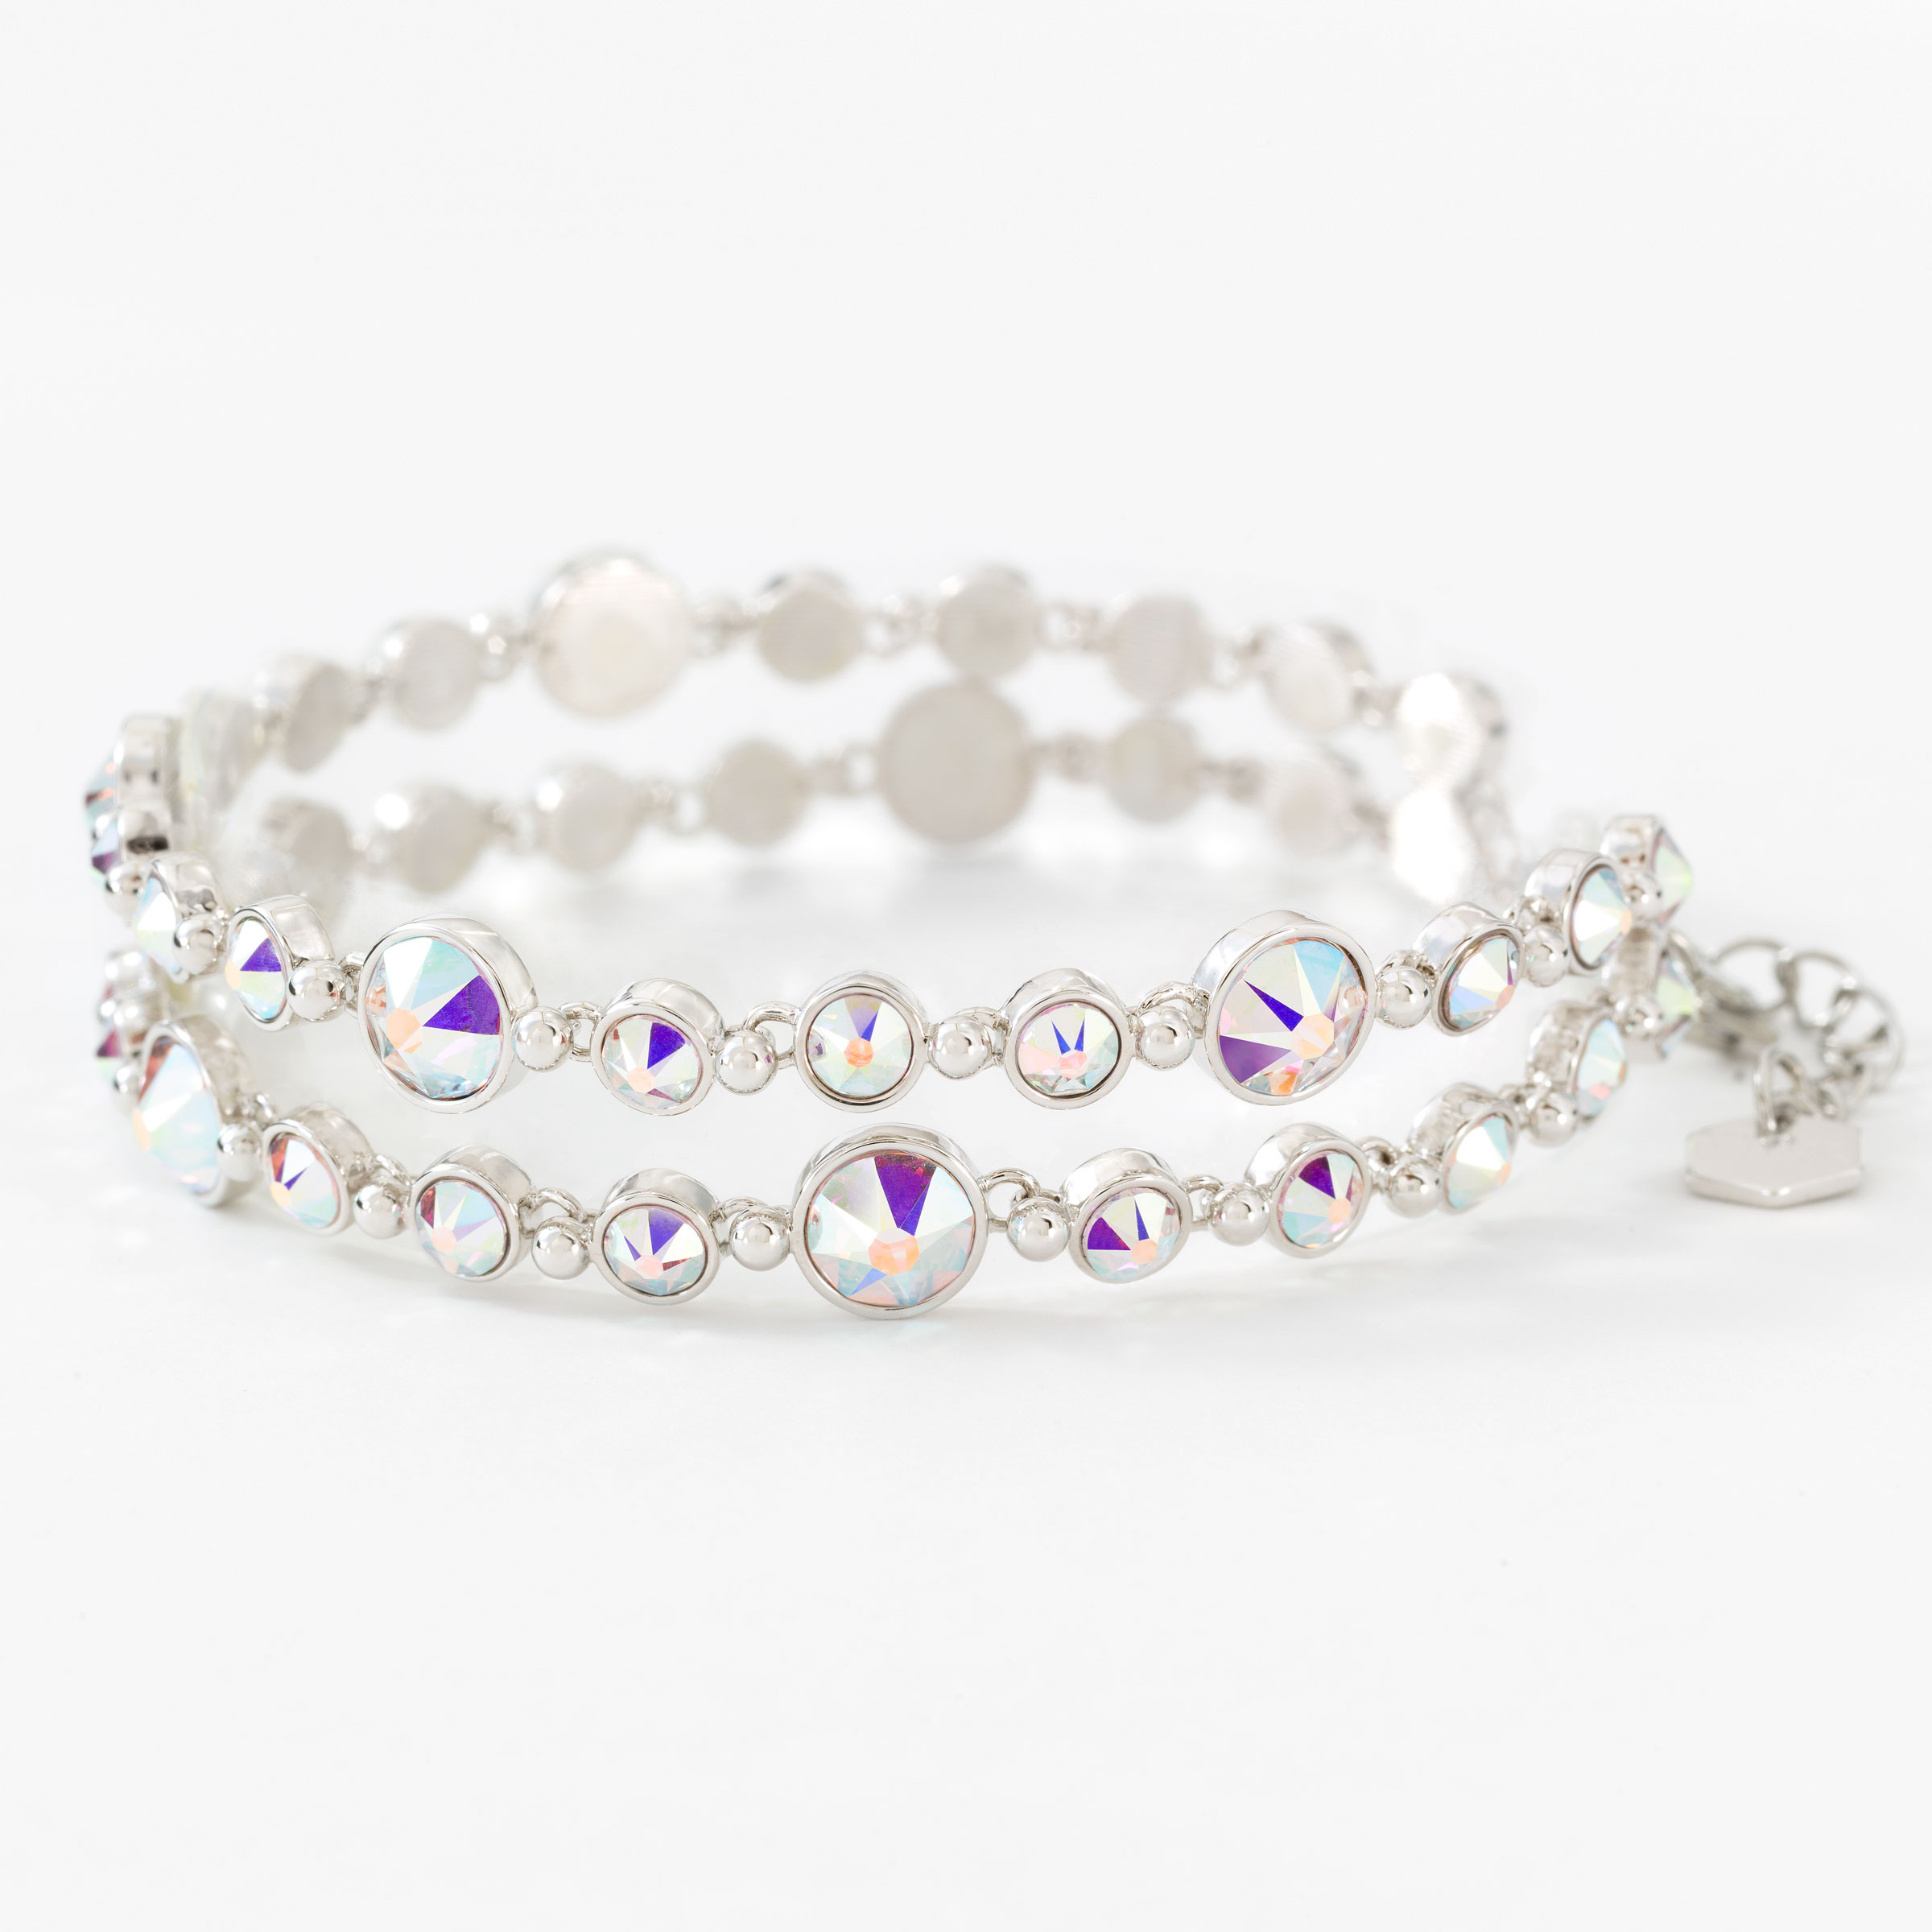 Silver AB Diamond Crystal Rhinestone 5 Row Stretch Bracelet Bangle Cuff  /1056 - Etsy Finland